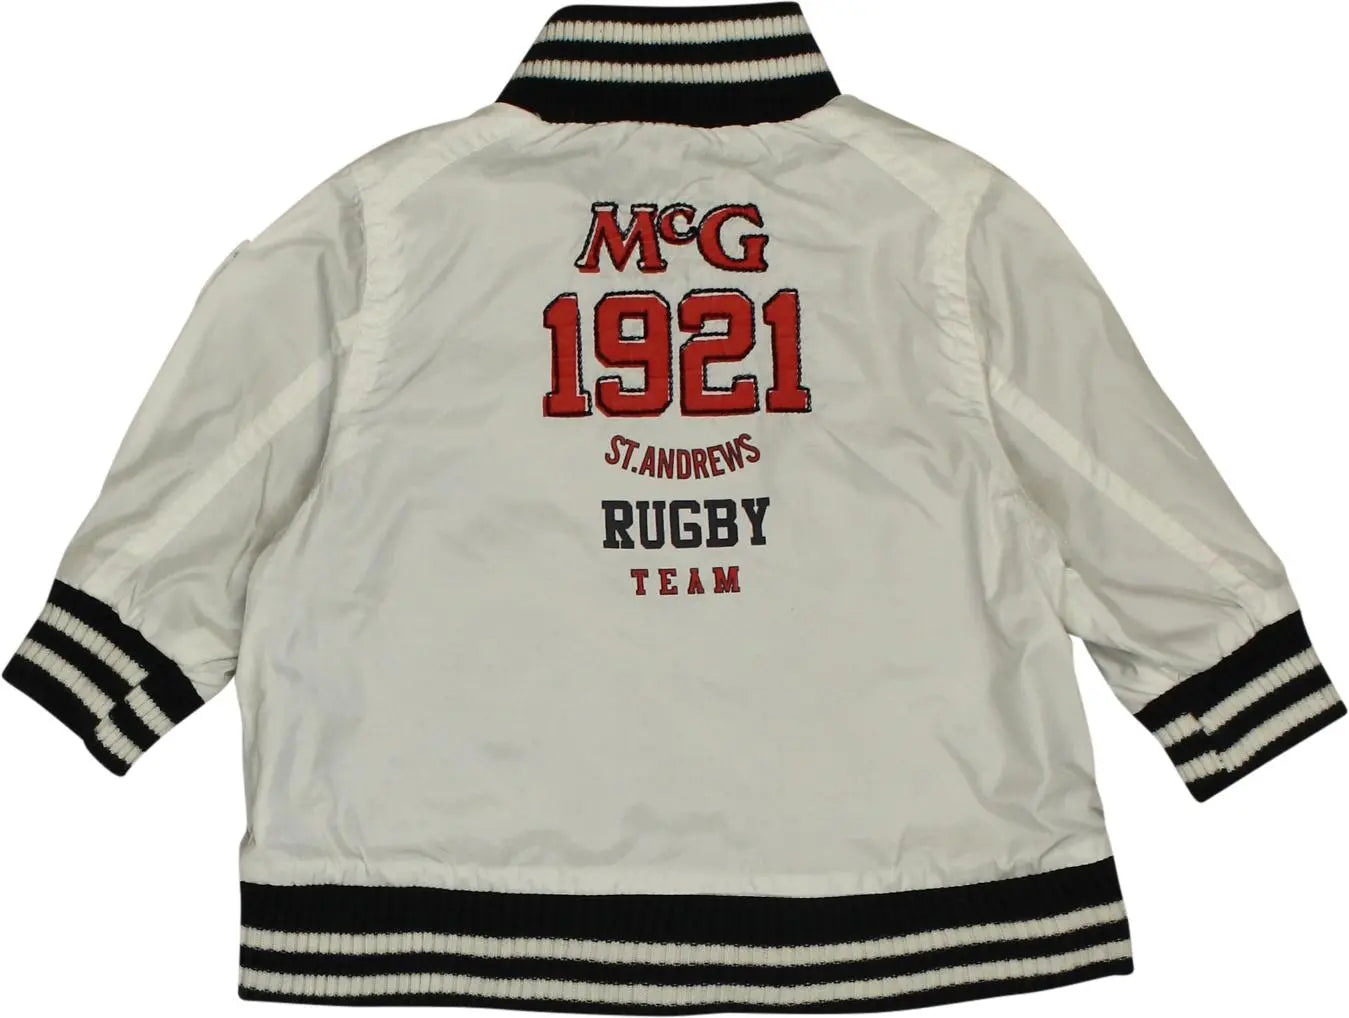 McGregor - McGregor Jacket- ThriftTale.com - Vintage and second handclothing